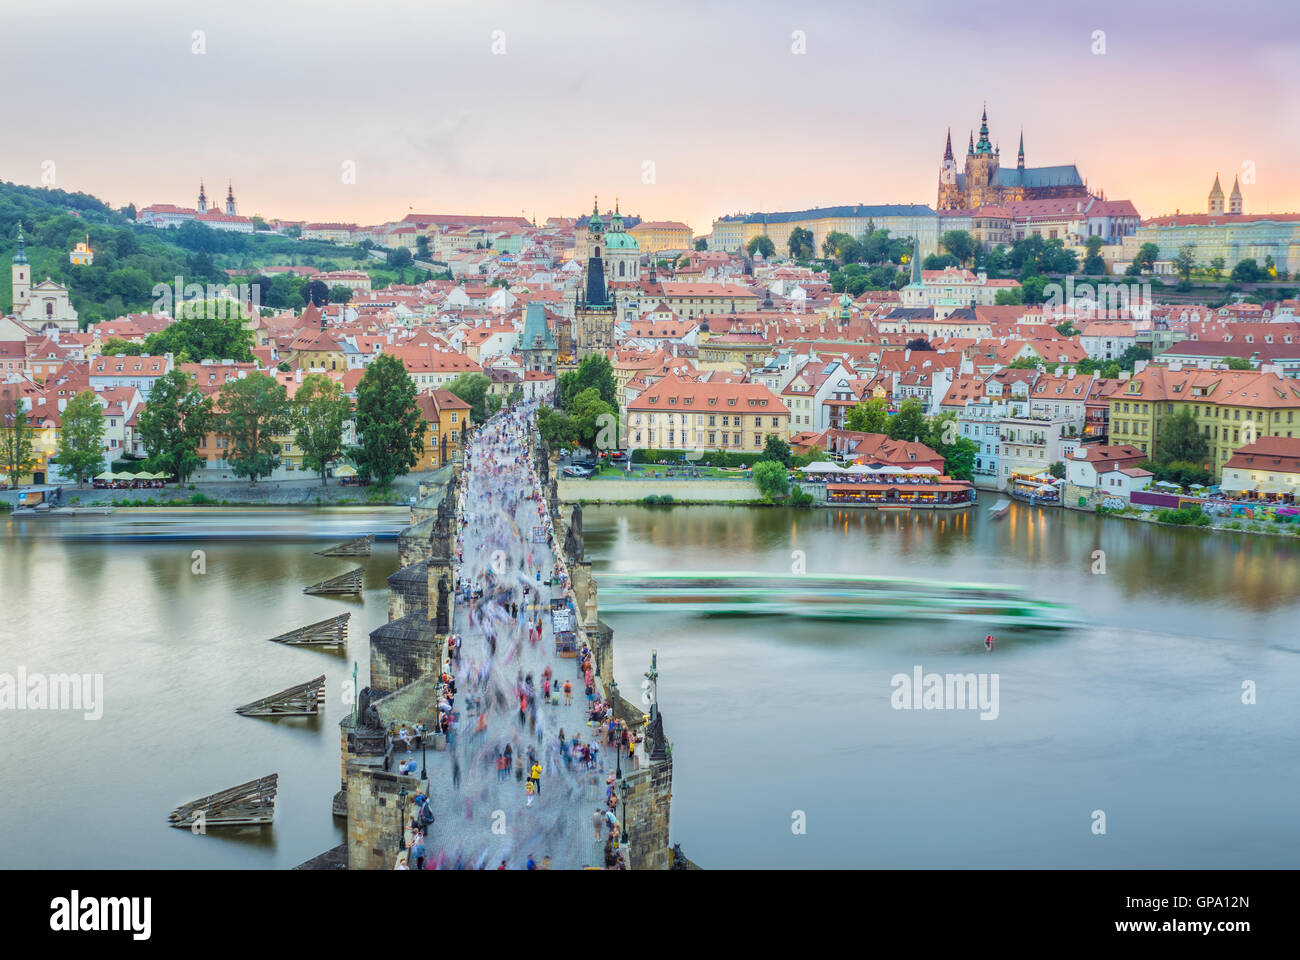 Die Karlsbrücke liegt in Prag, Tschechien. Fertige im XV Jahrhundert, überquert er die Moldau führt die Zertifizierungsstelle Stockfoto